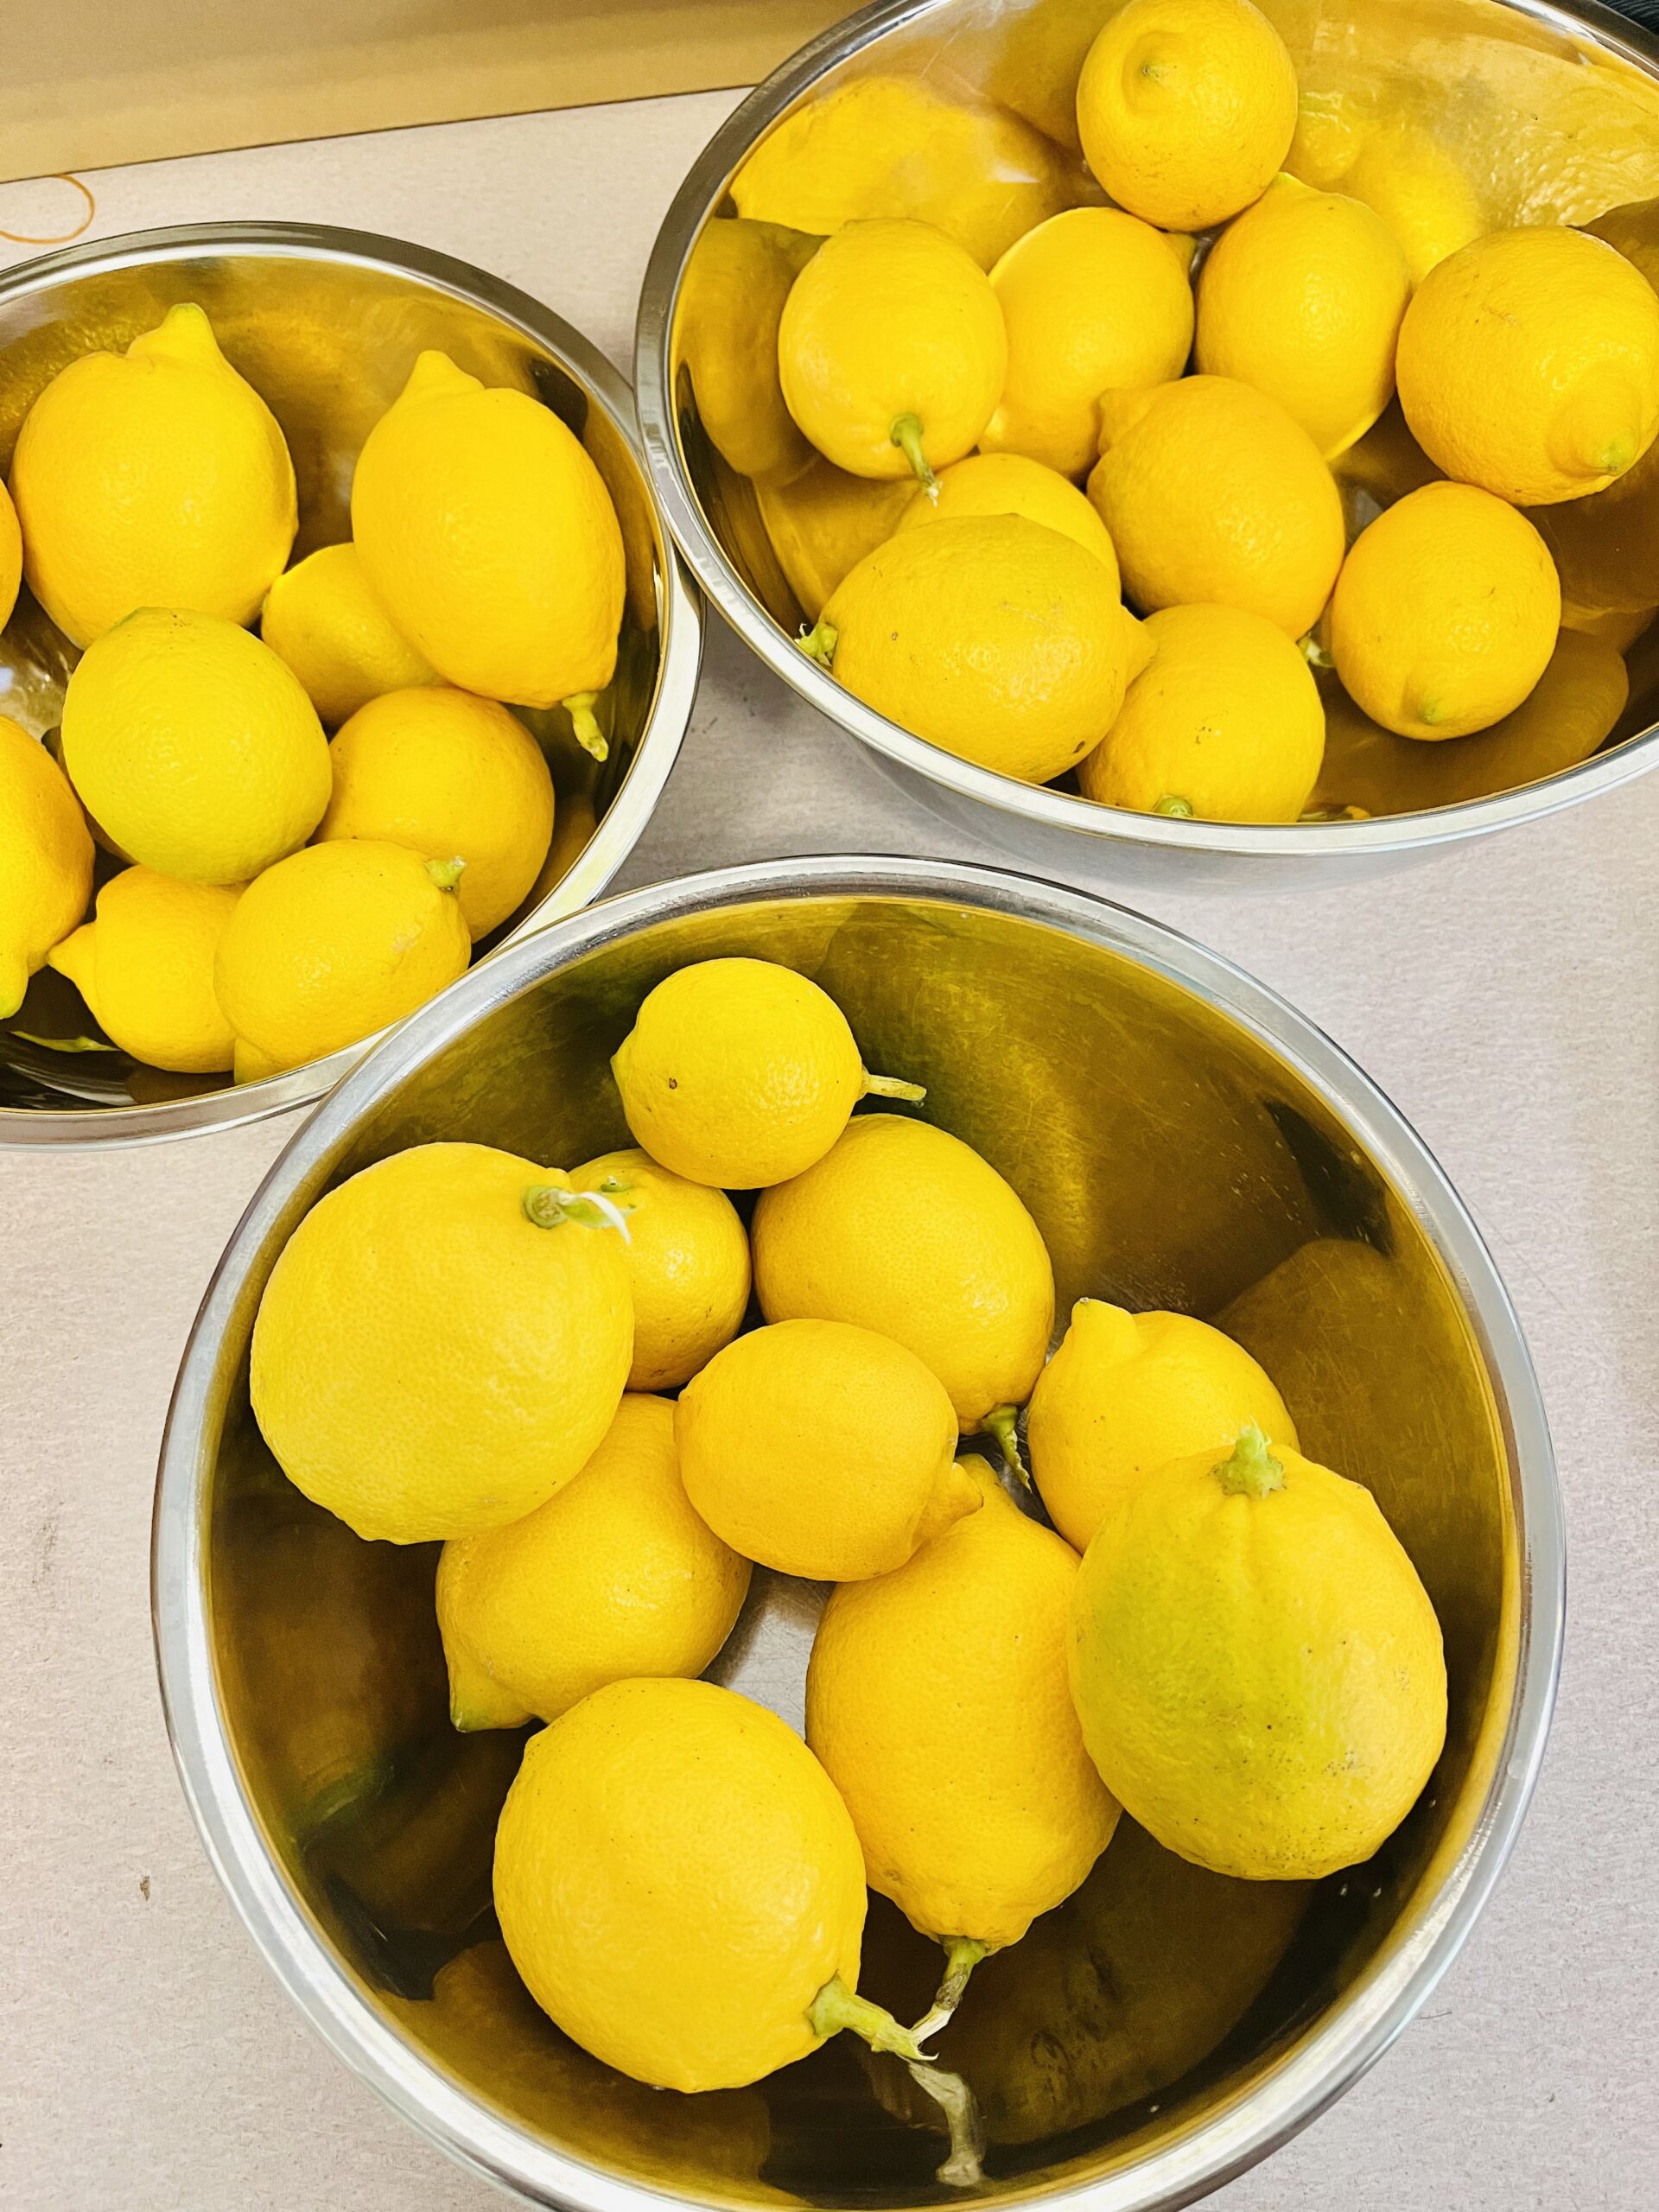 中2校内でのレモン収穫